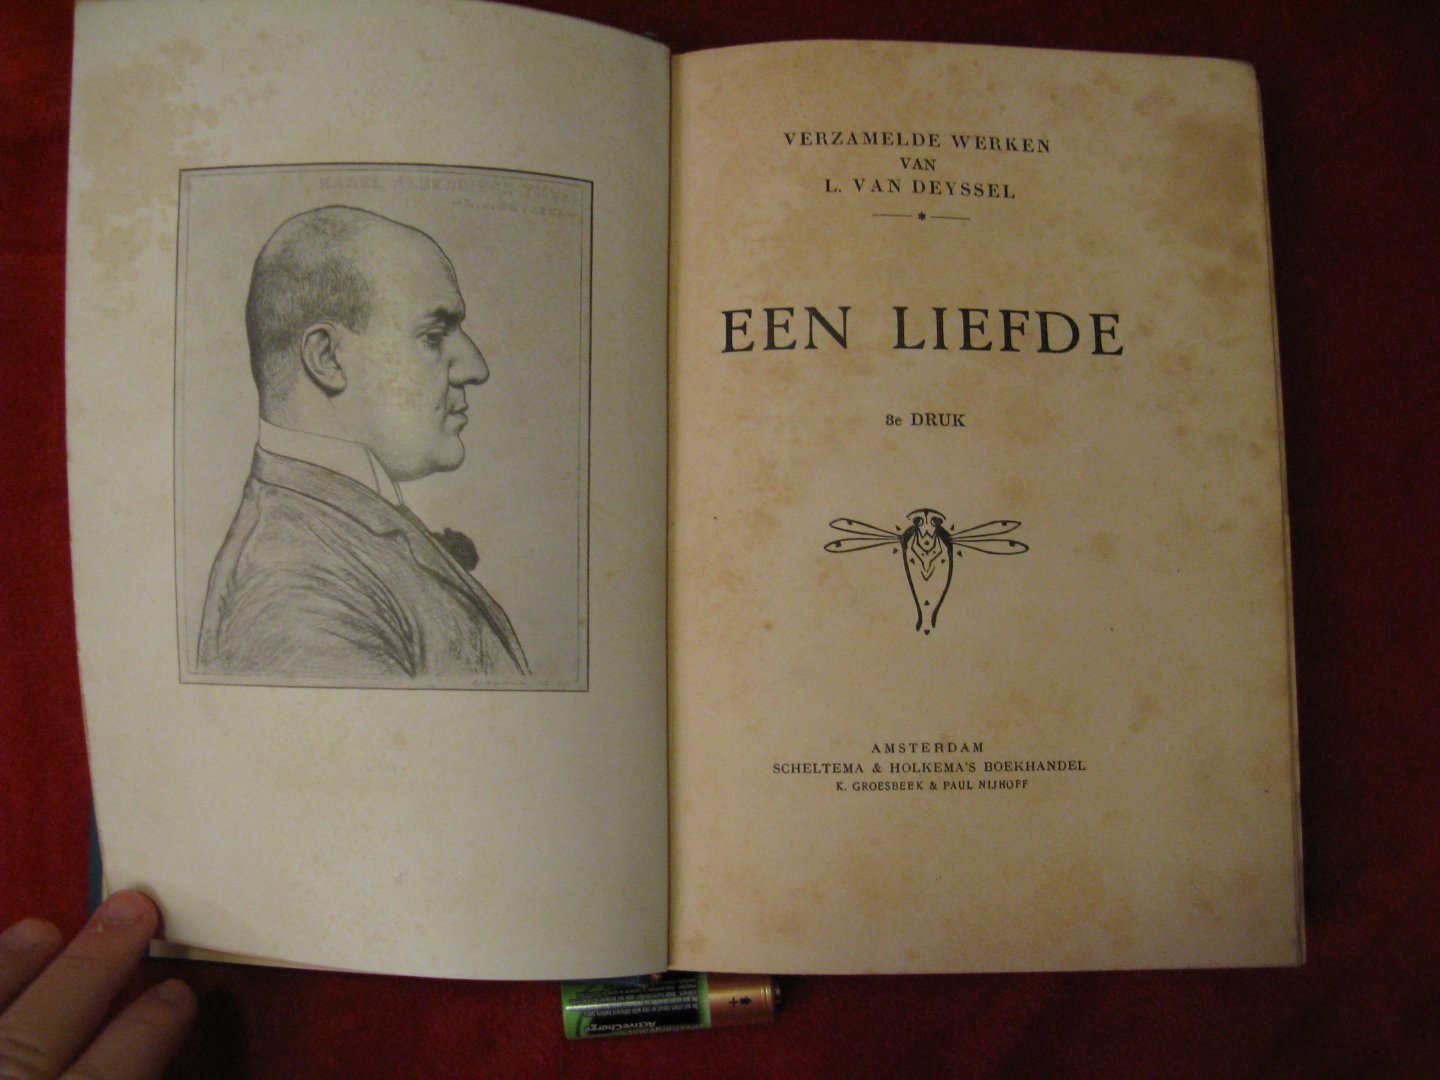 L. van deyssel - Verzamelde werken van L. van Deyssel: een liefde